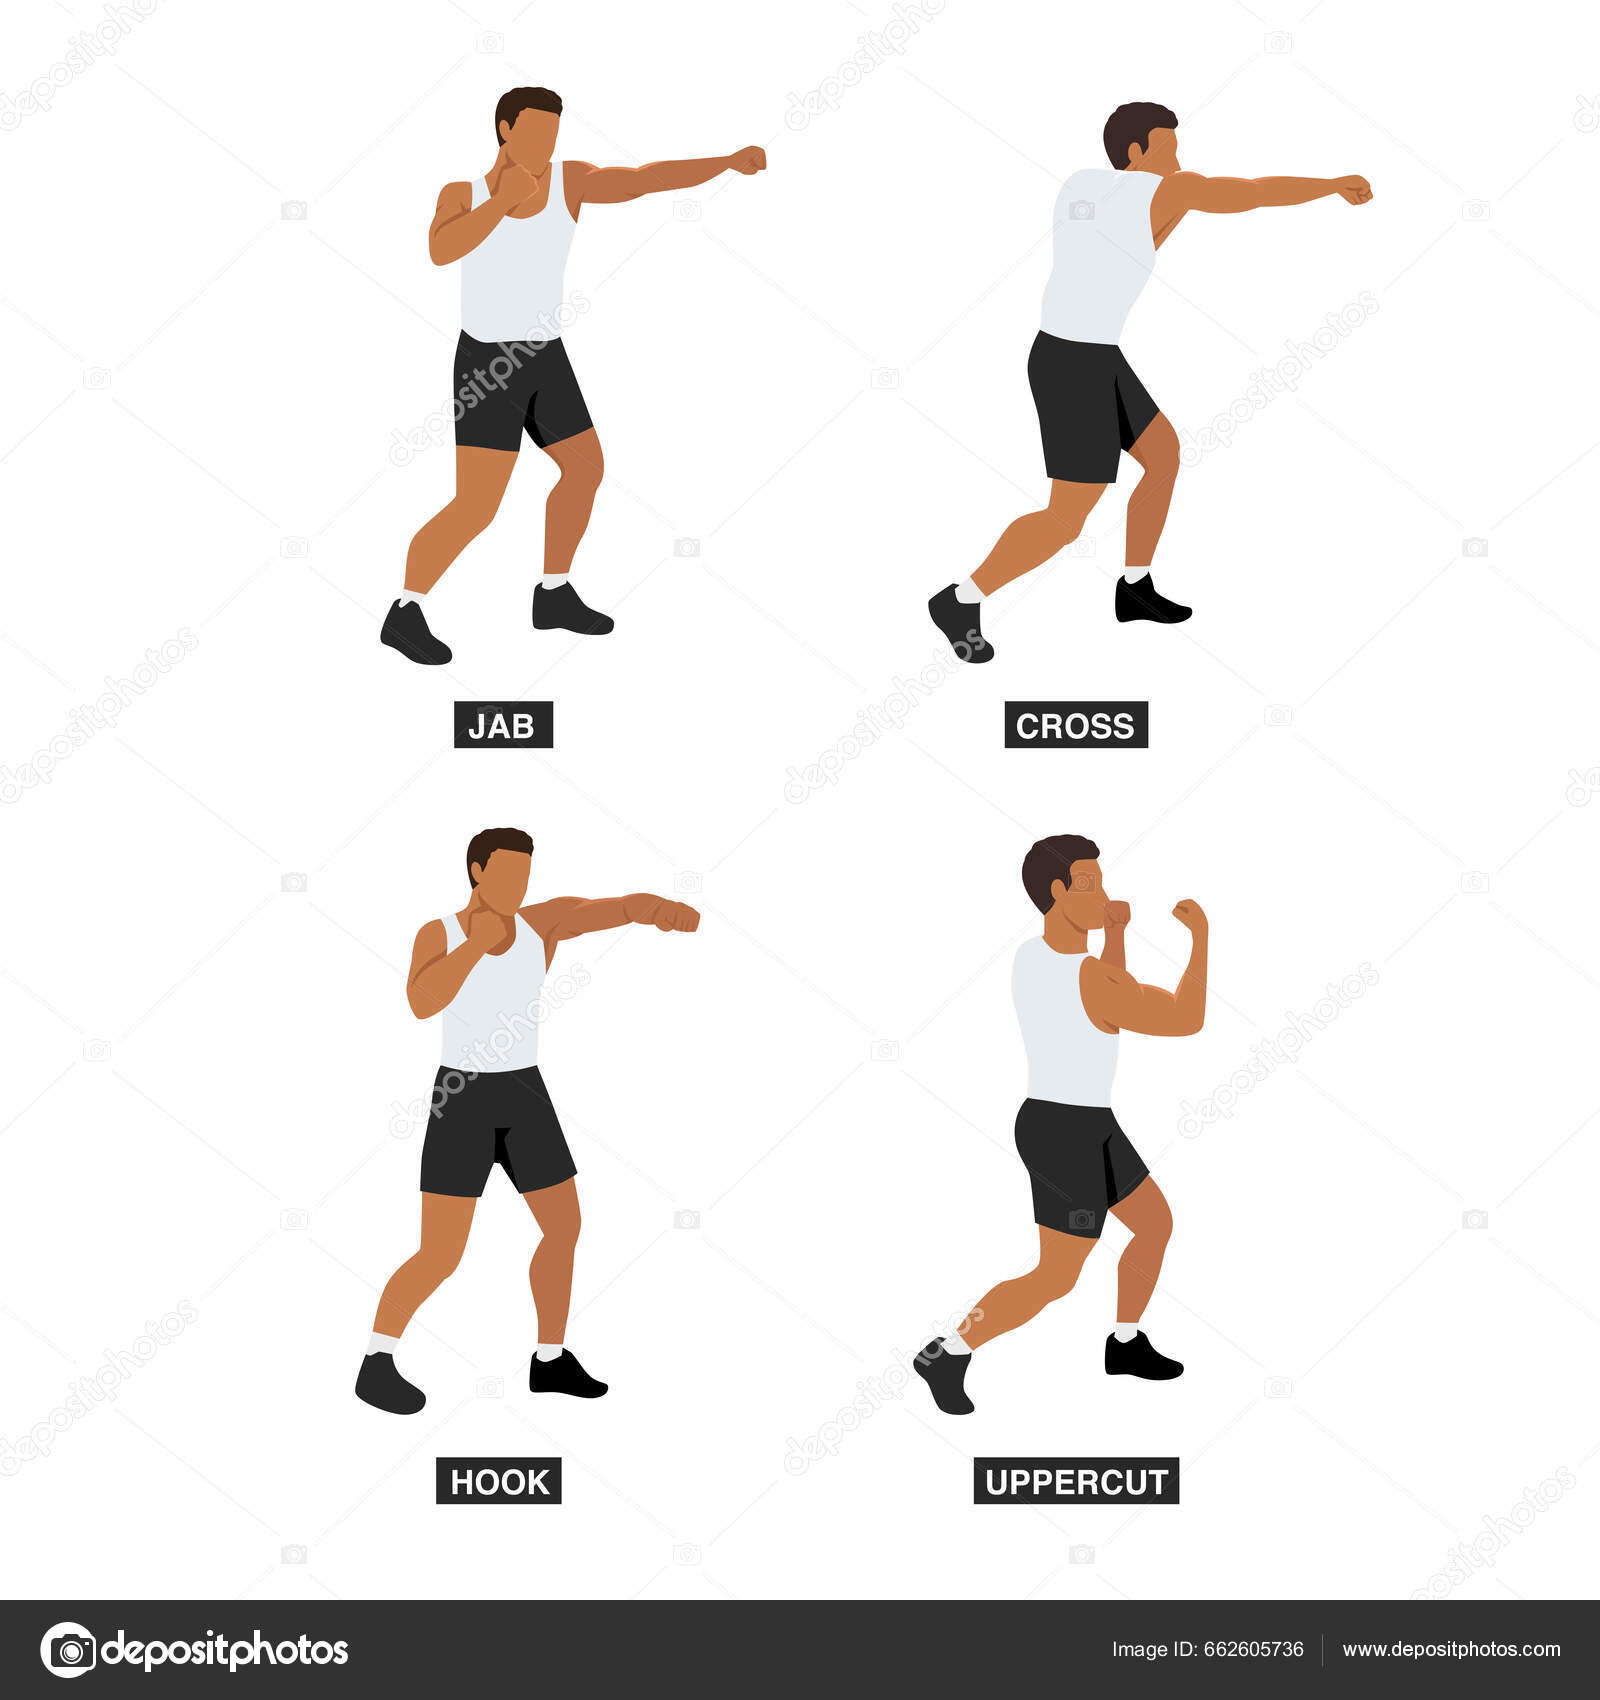 https://st5.depositphotos.com/80218270/66260/v/1600/depositphotos_662605736-stock-illustration-man-doing-boxing-moves-exercise.jpg